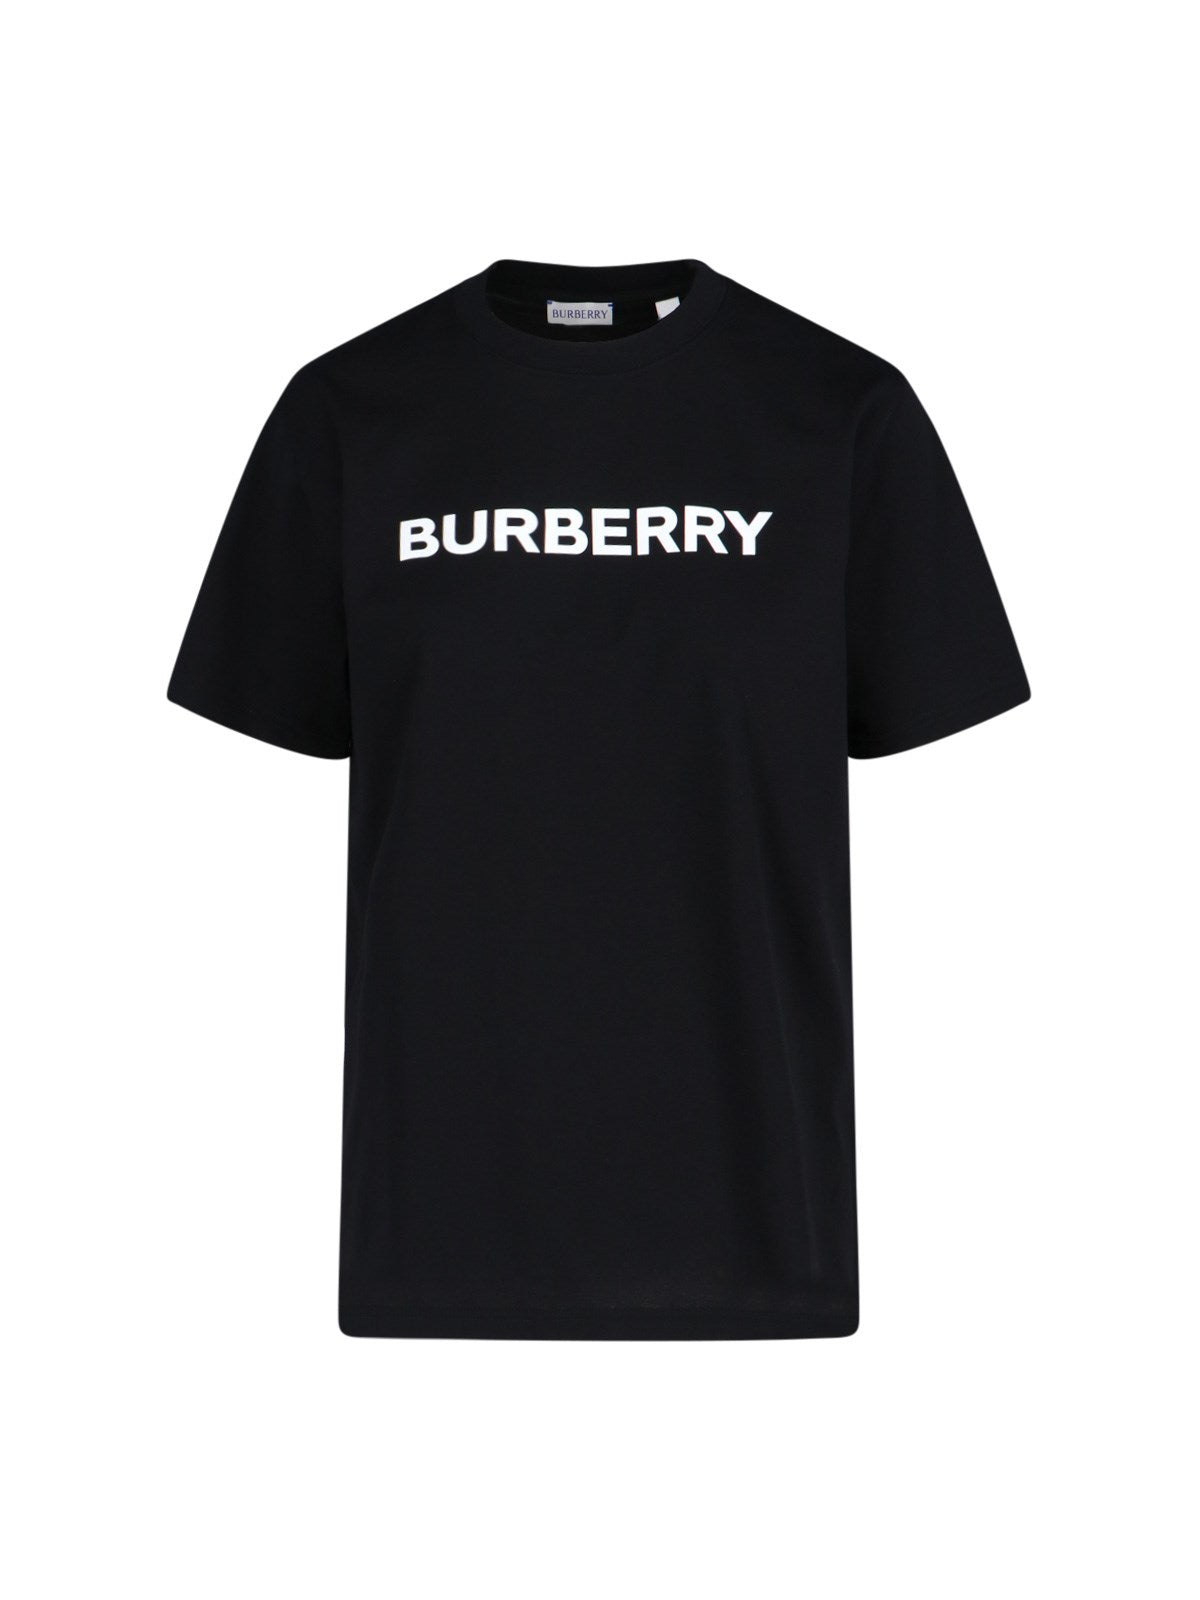 burberry t-shirt logo-Burberry- t-shirt Dresso